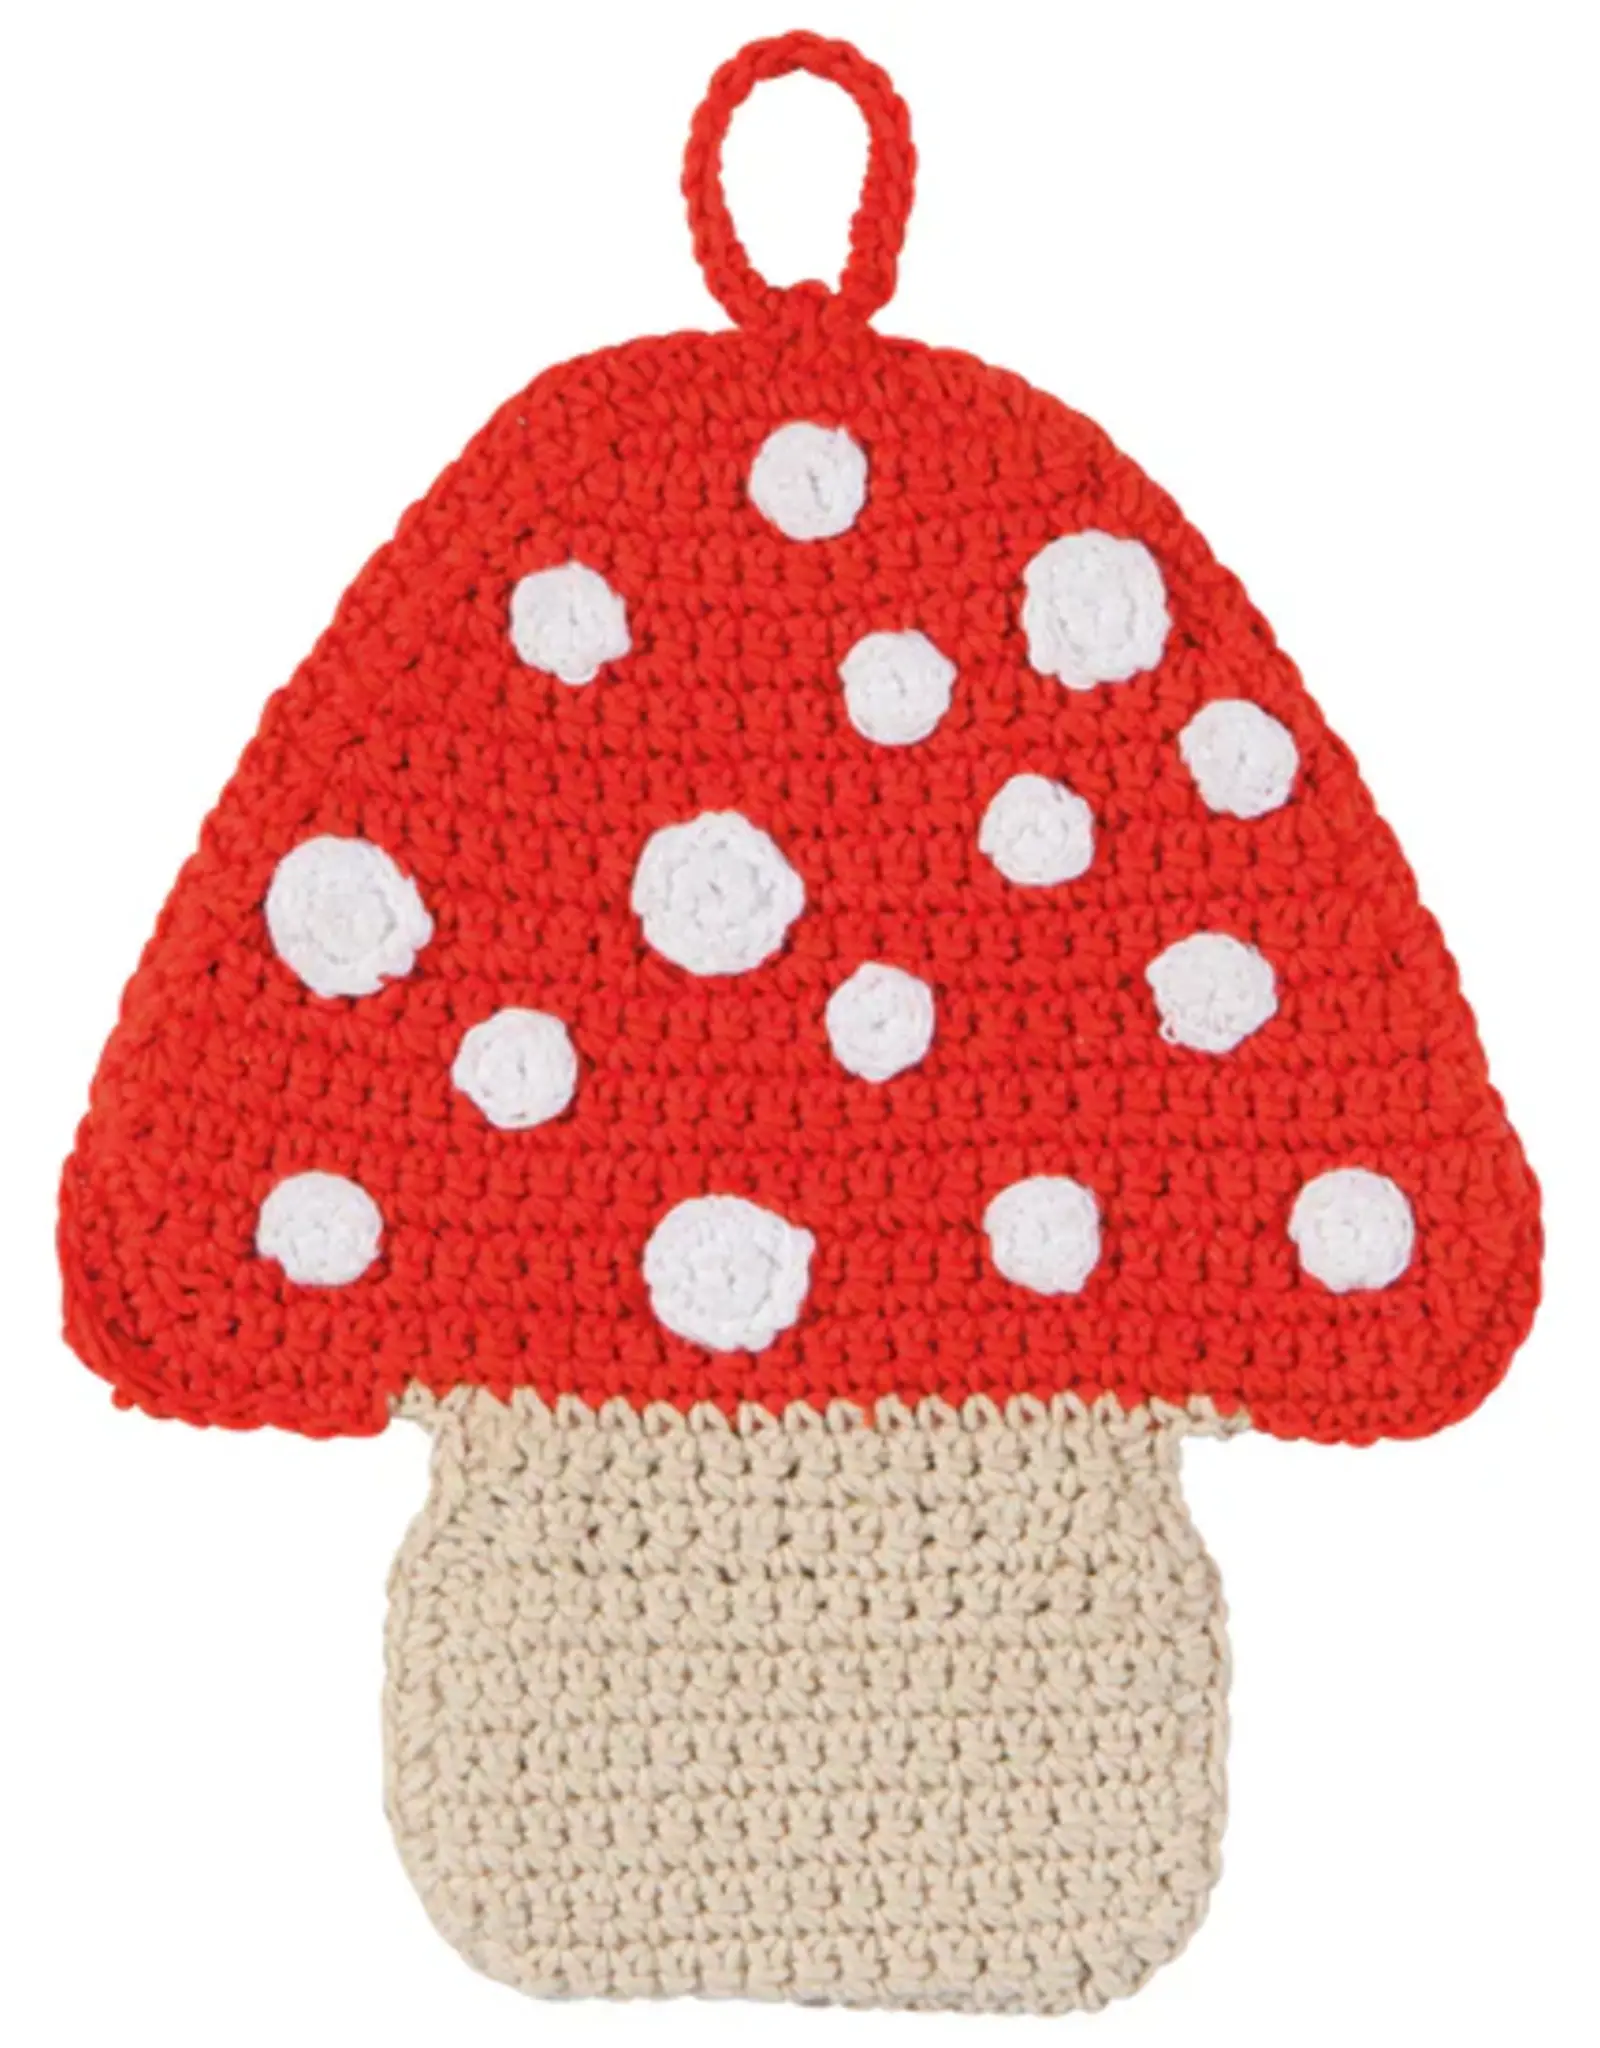 Danica + Now Designs Trivet - Crochet Toadstool